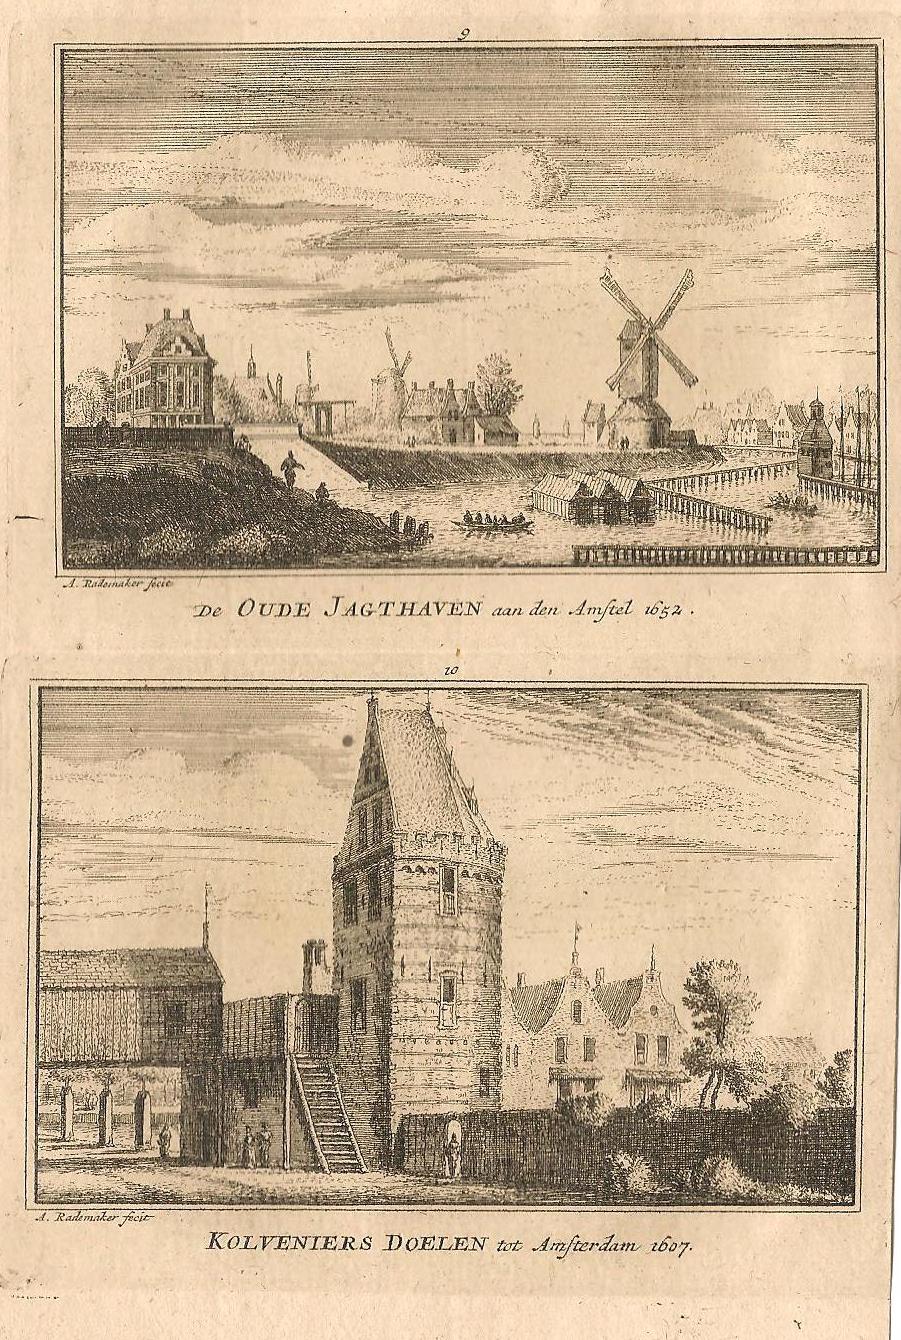 Amsterdam Oude Jachthaven en Kloveniersdoelen - A Rademaker / JA Crajenschot, - 1792